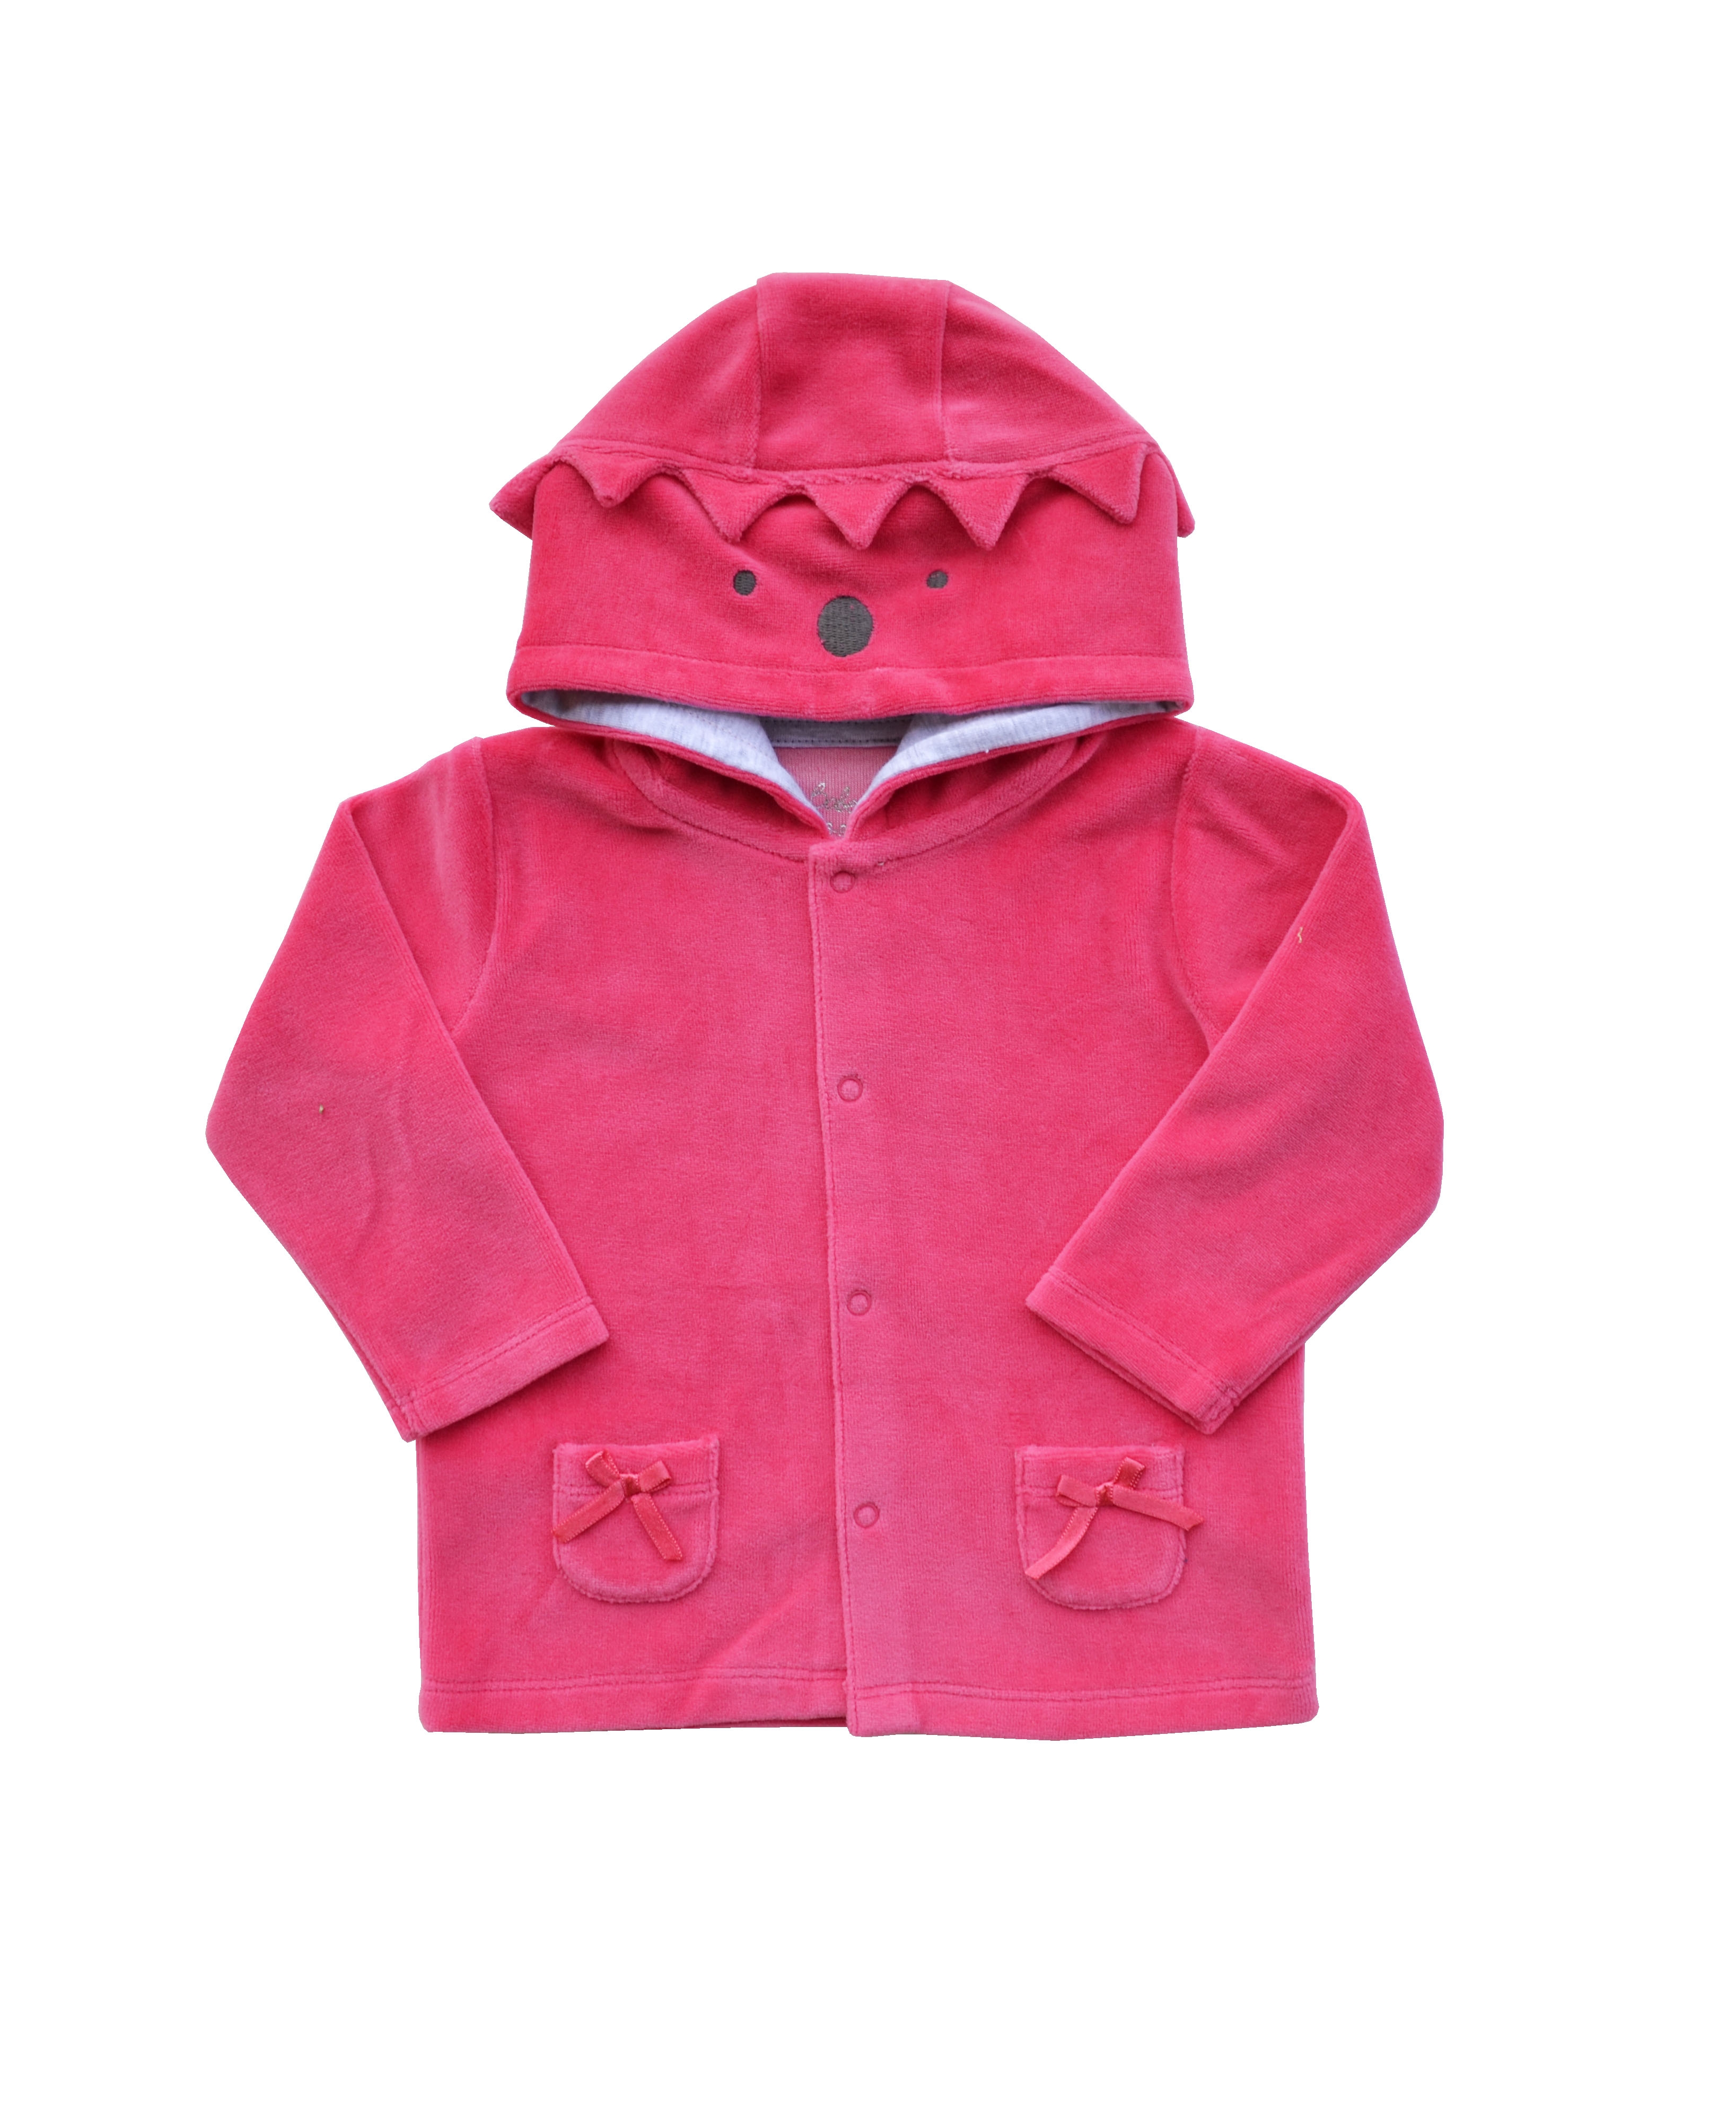 Pink Long Sleeve Hoody Jacket (Velour)